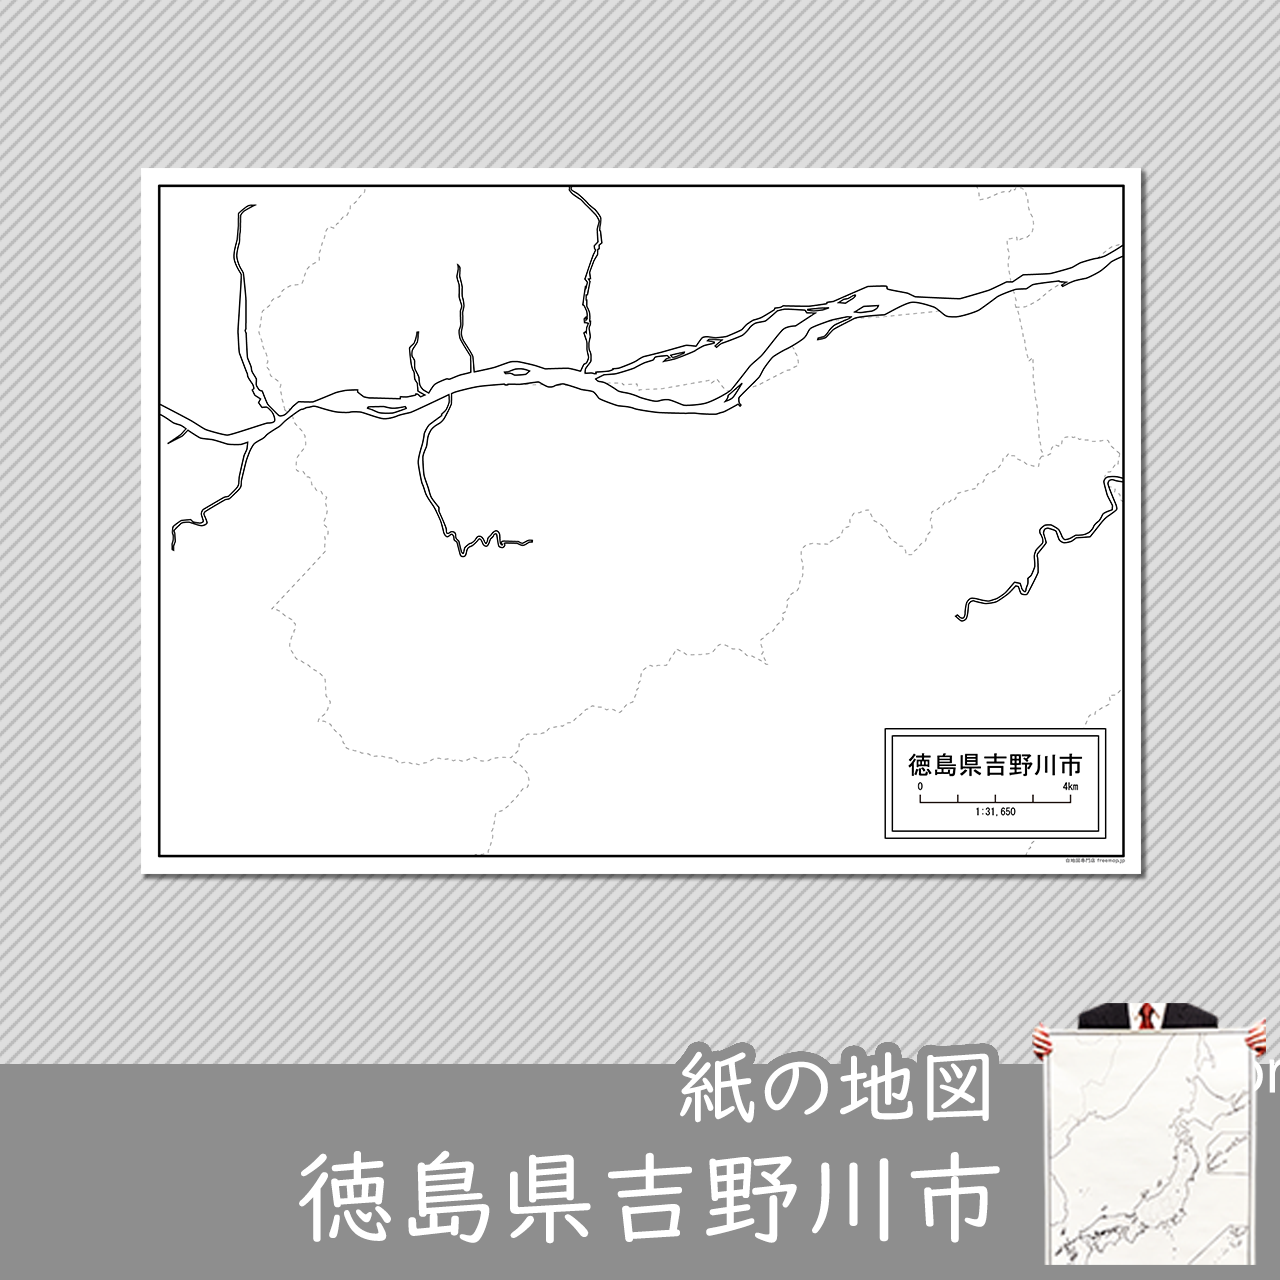 吉野川市の紙の白地図のサムネイル